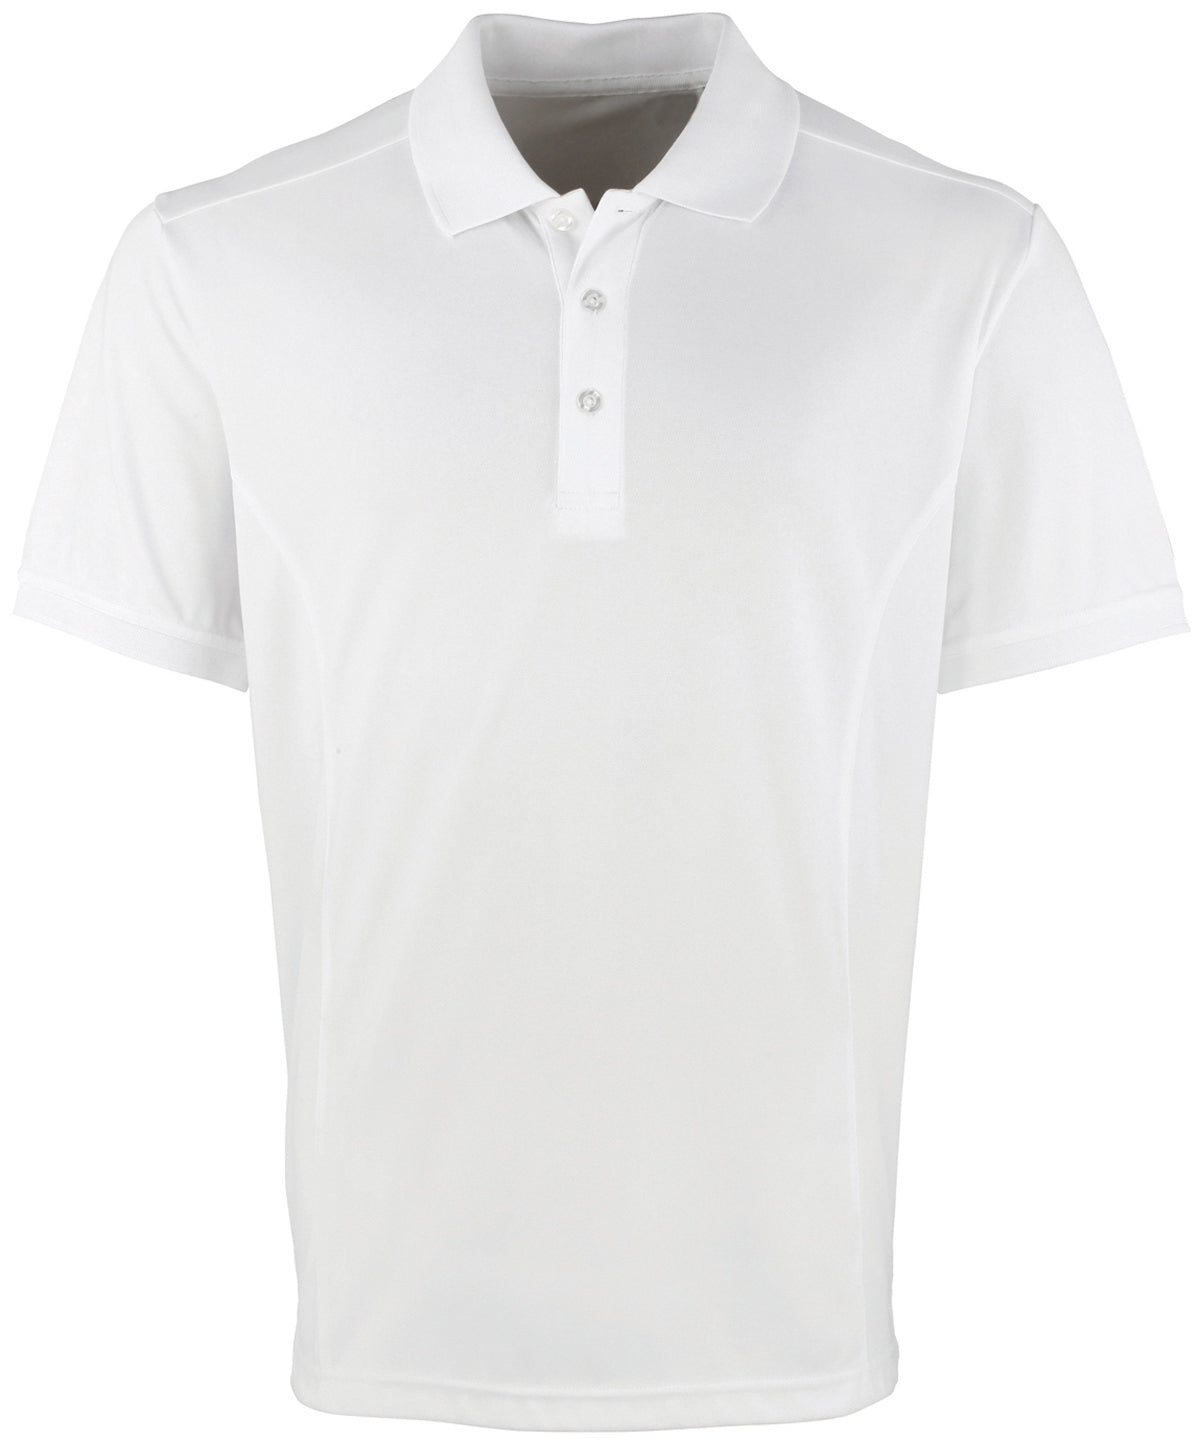 Premier Coolchecker Pique Polo Shirt (PR615) Core Colors - COOZO